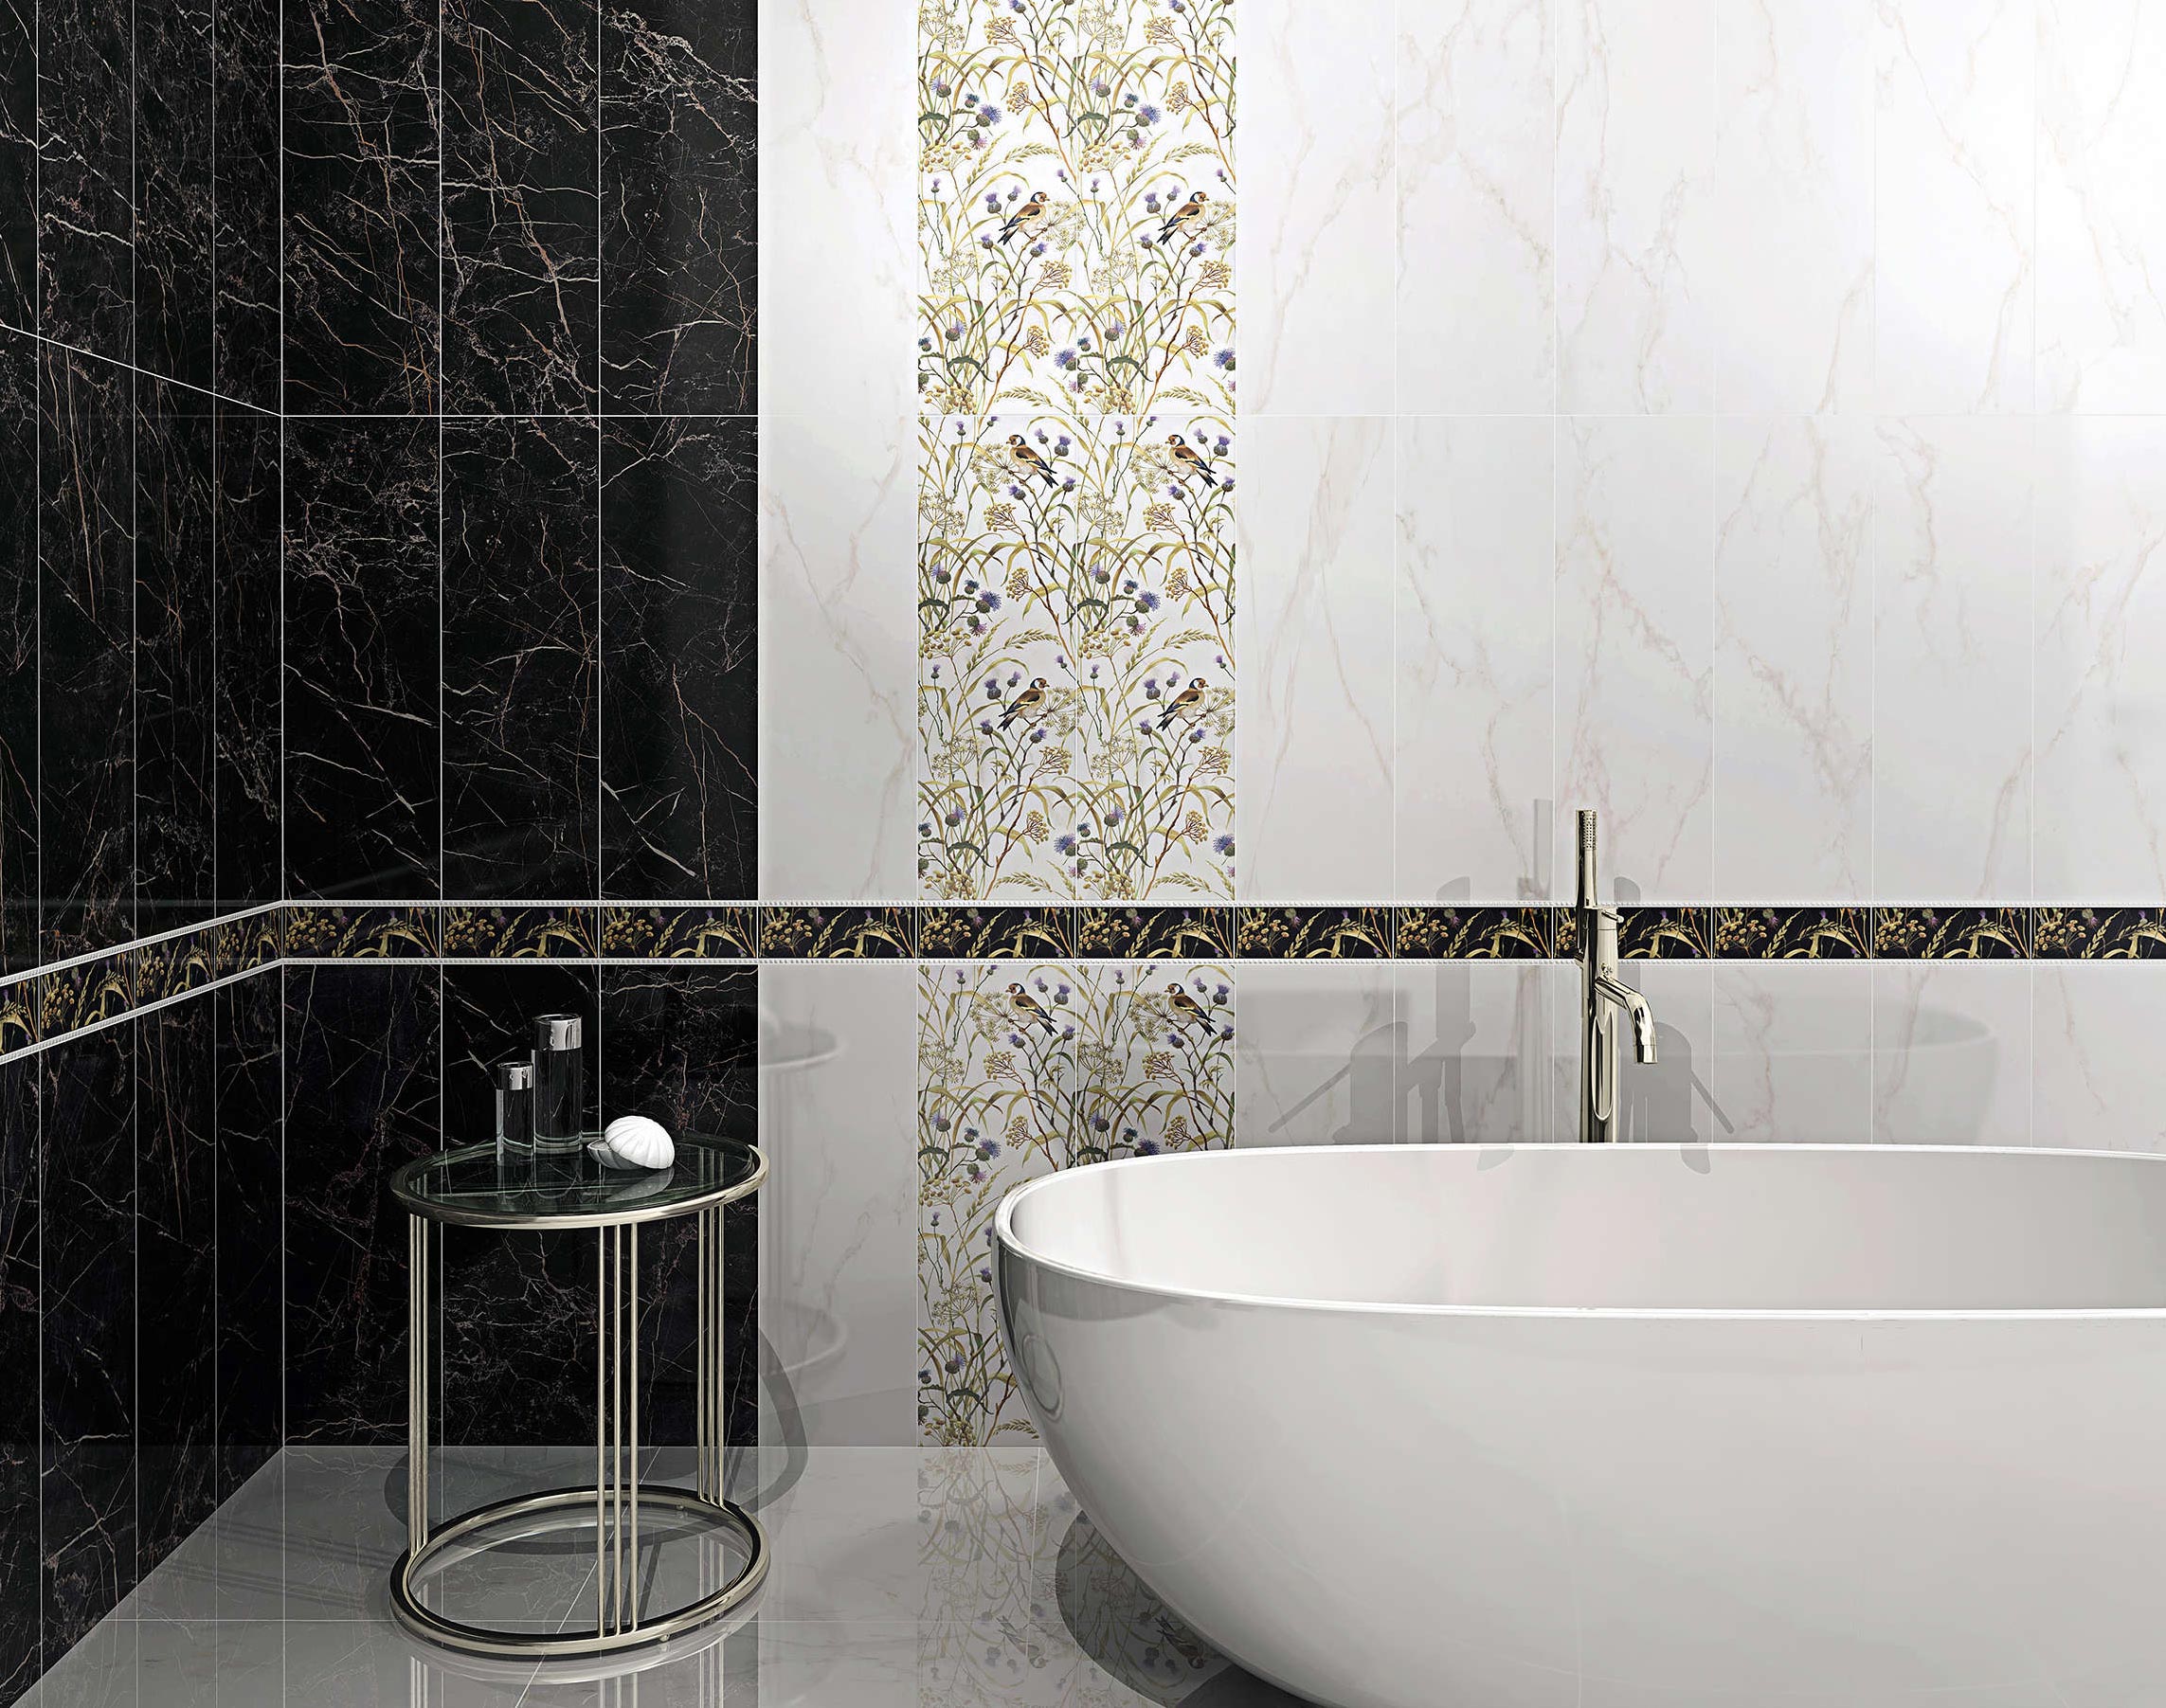 Плитка Kerama Marazzi (Керама Марацци) для ванної: 100+ фото дизайну ванної з плиткою Керама Марацци